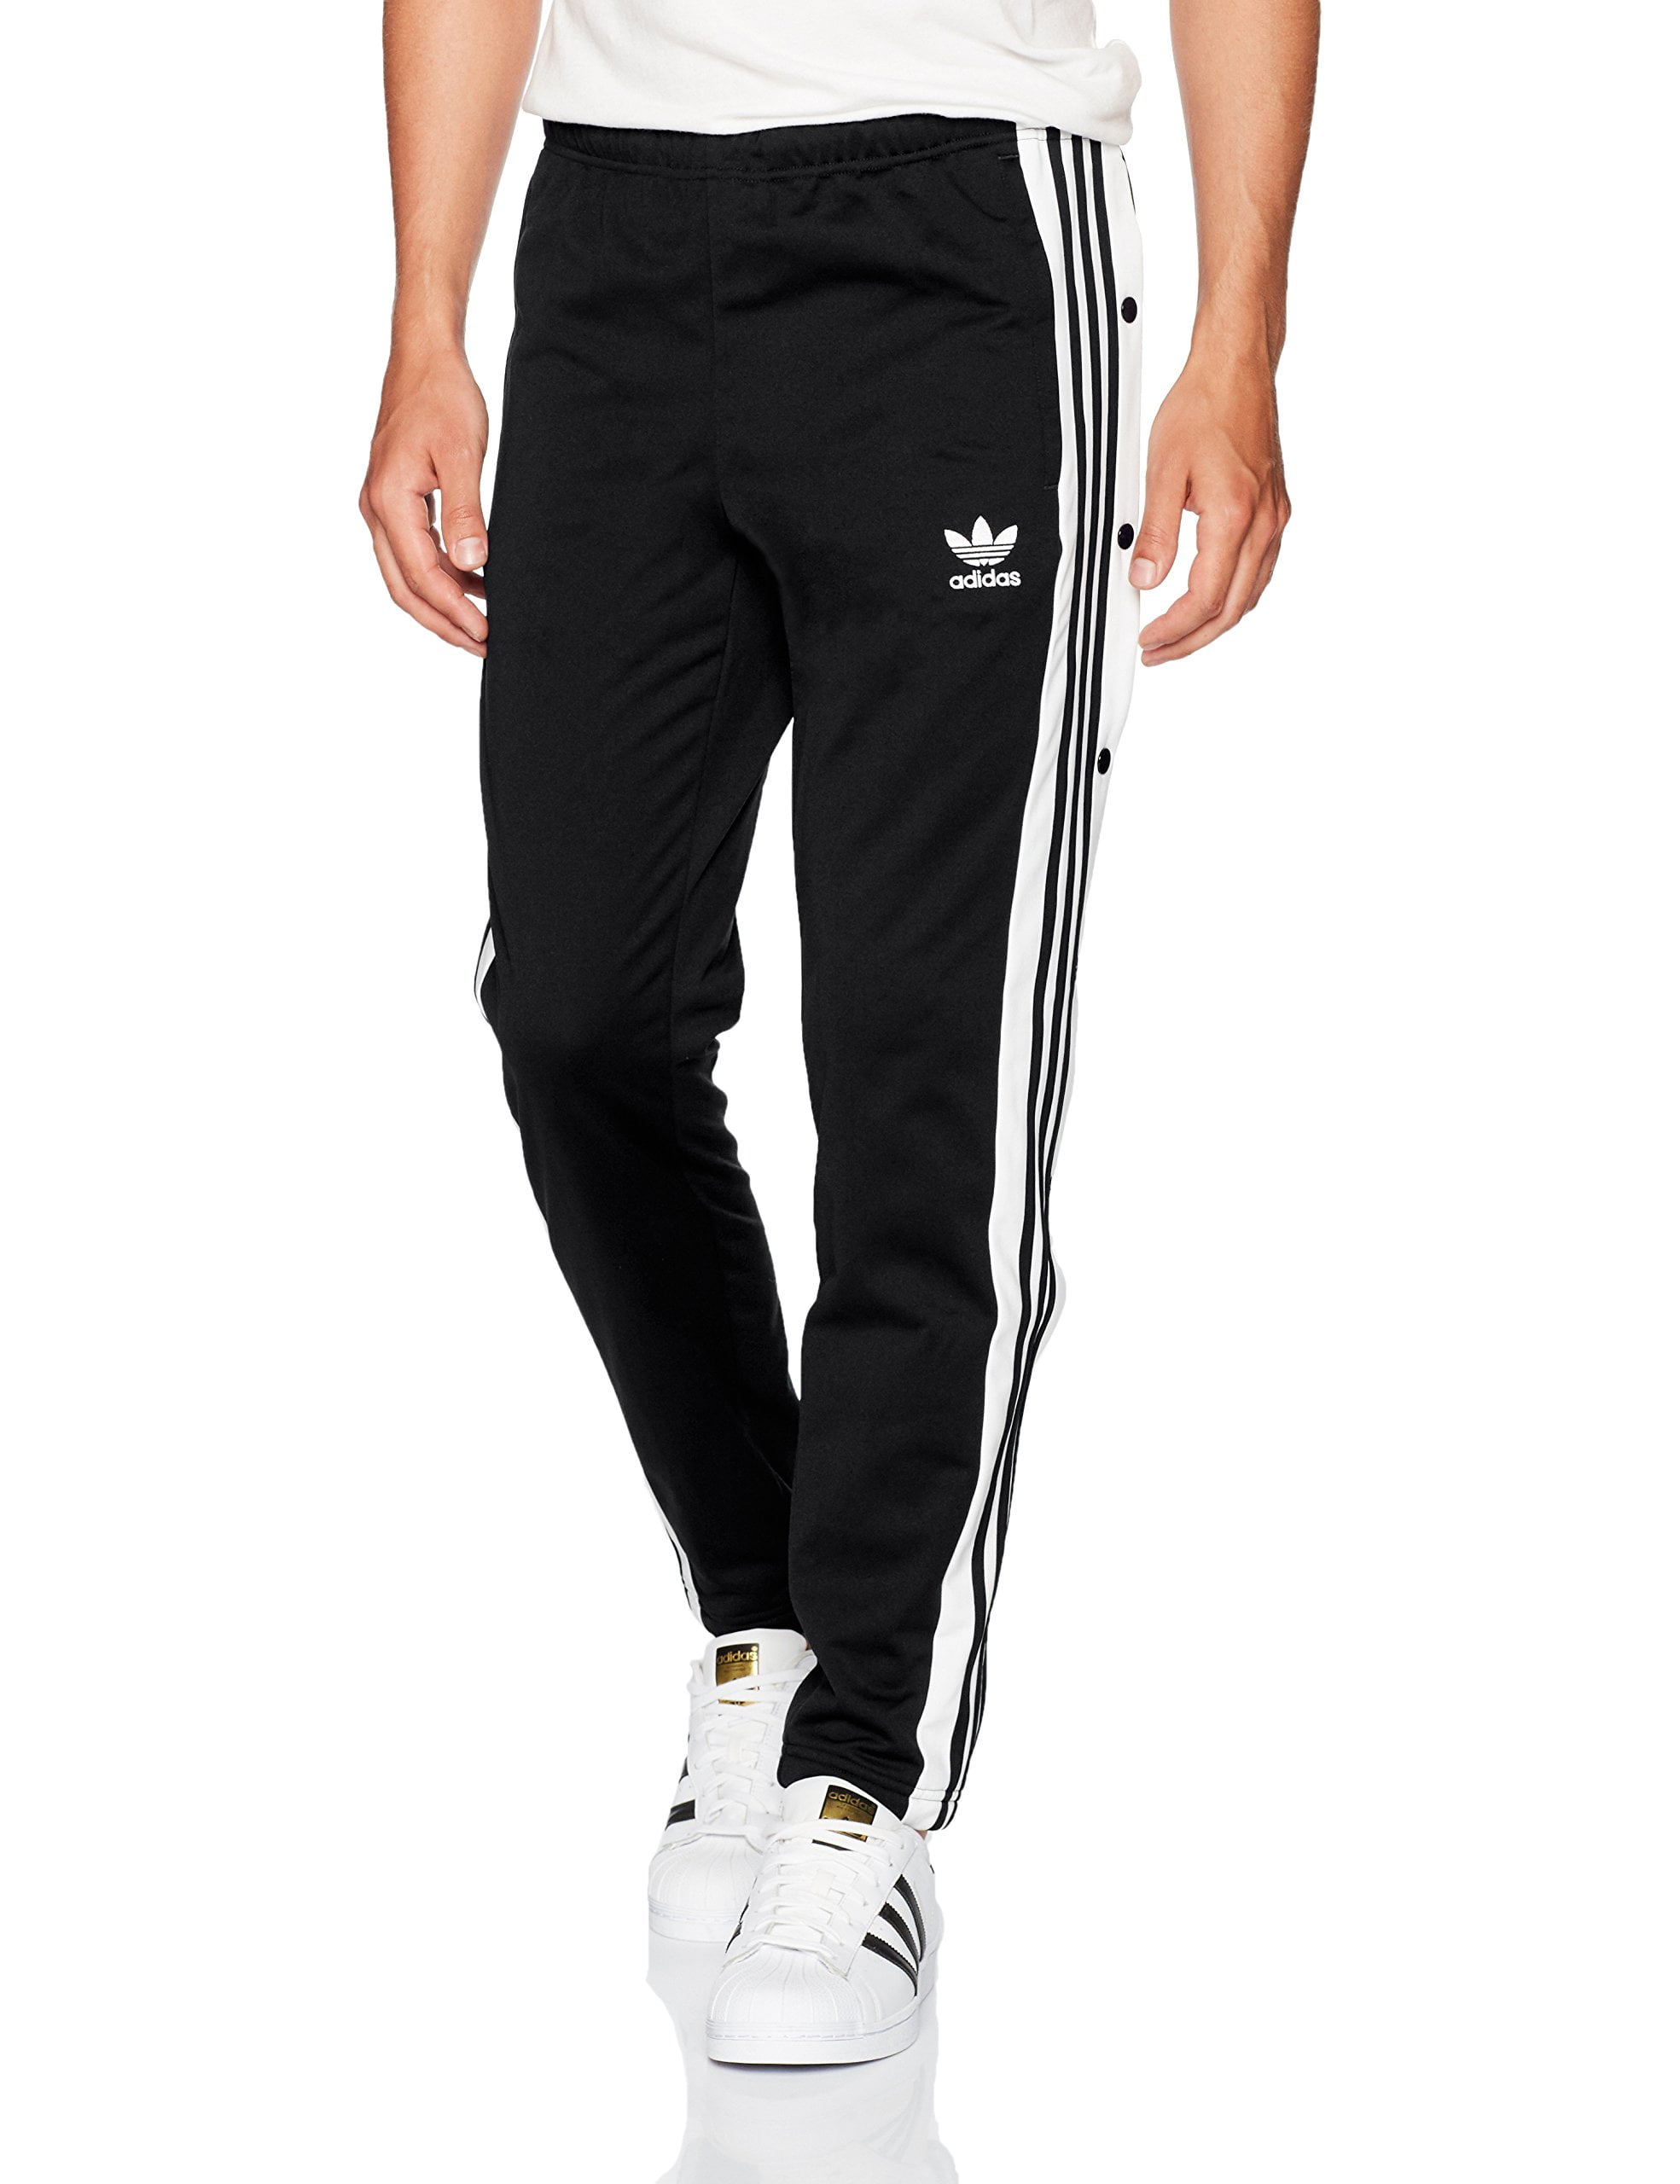 adidas Originals Men's adibreak Track Pants (Black, S) - Walmart.com